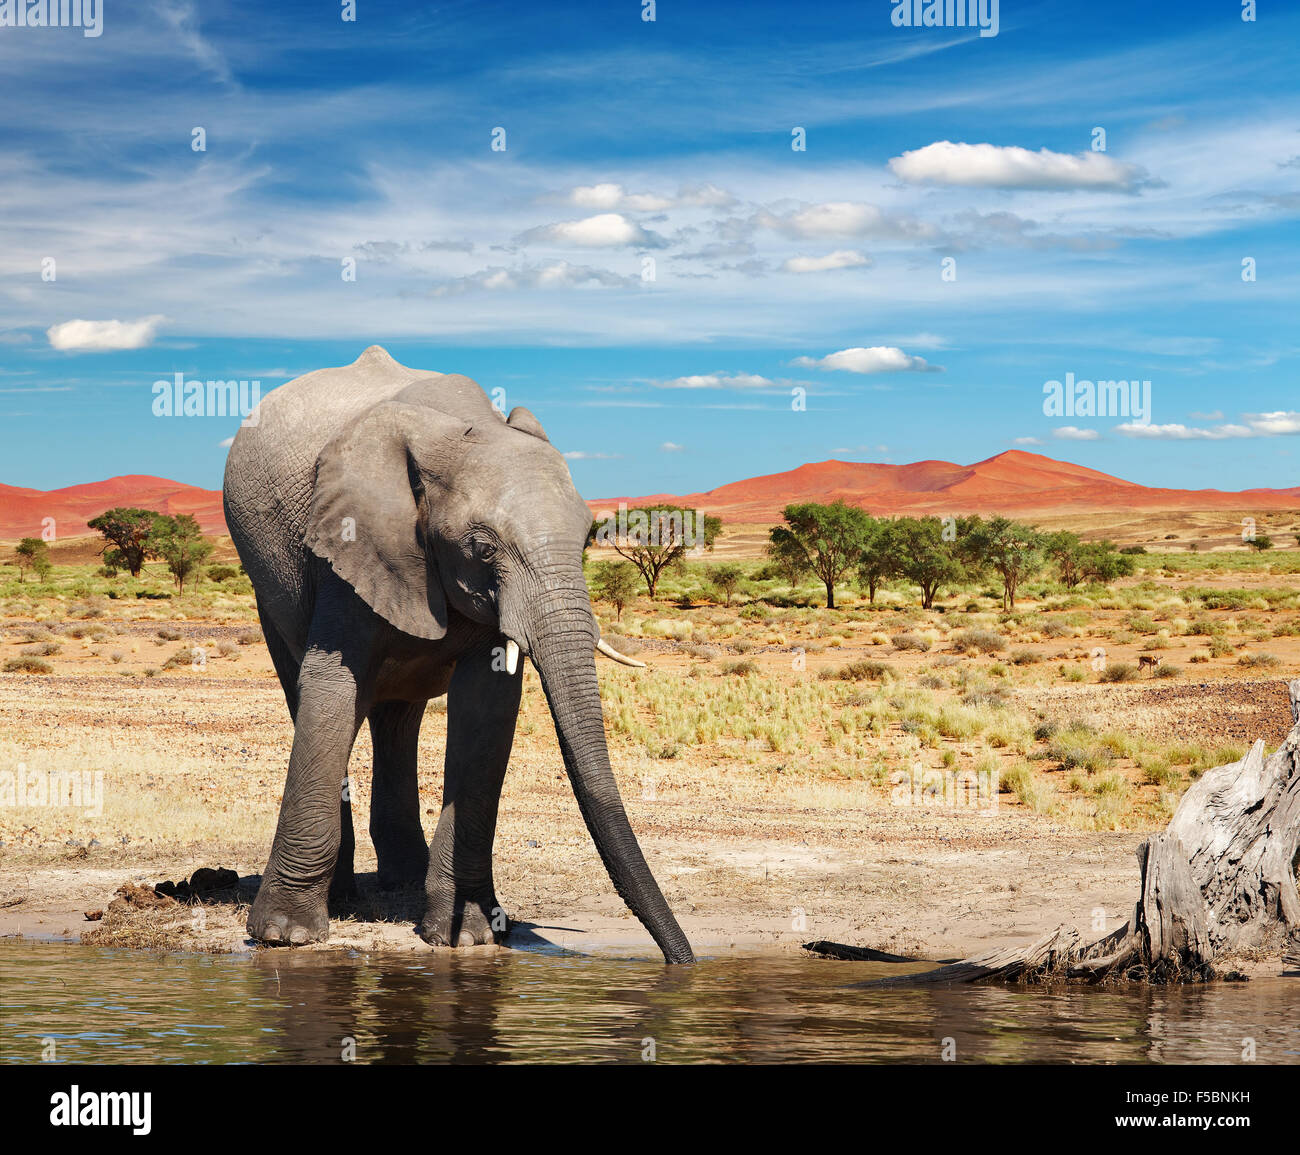 Dans l'éléphant de savane africaine potable Banque D'Images